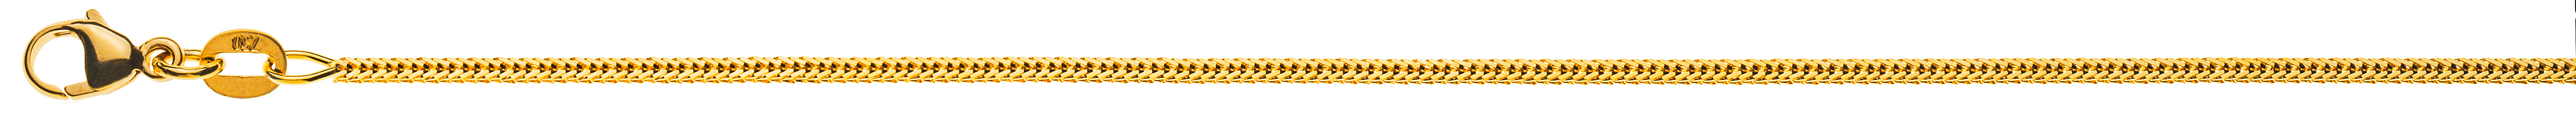 AURONOS Prestige Halskette Gelbgold 18K Fuchsschwanz diamantiert 45cm 1.2mm